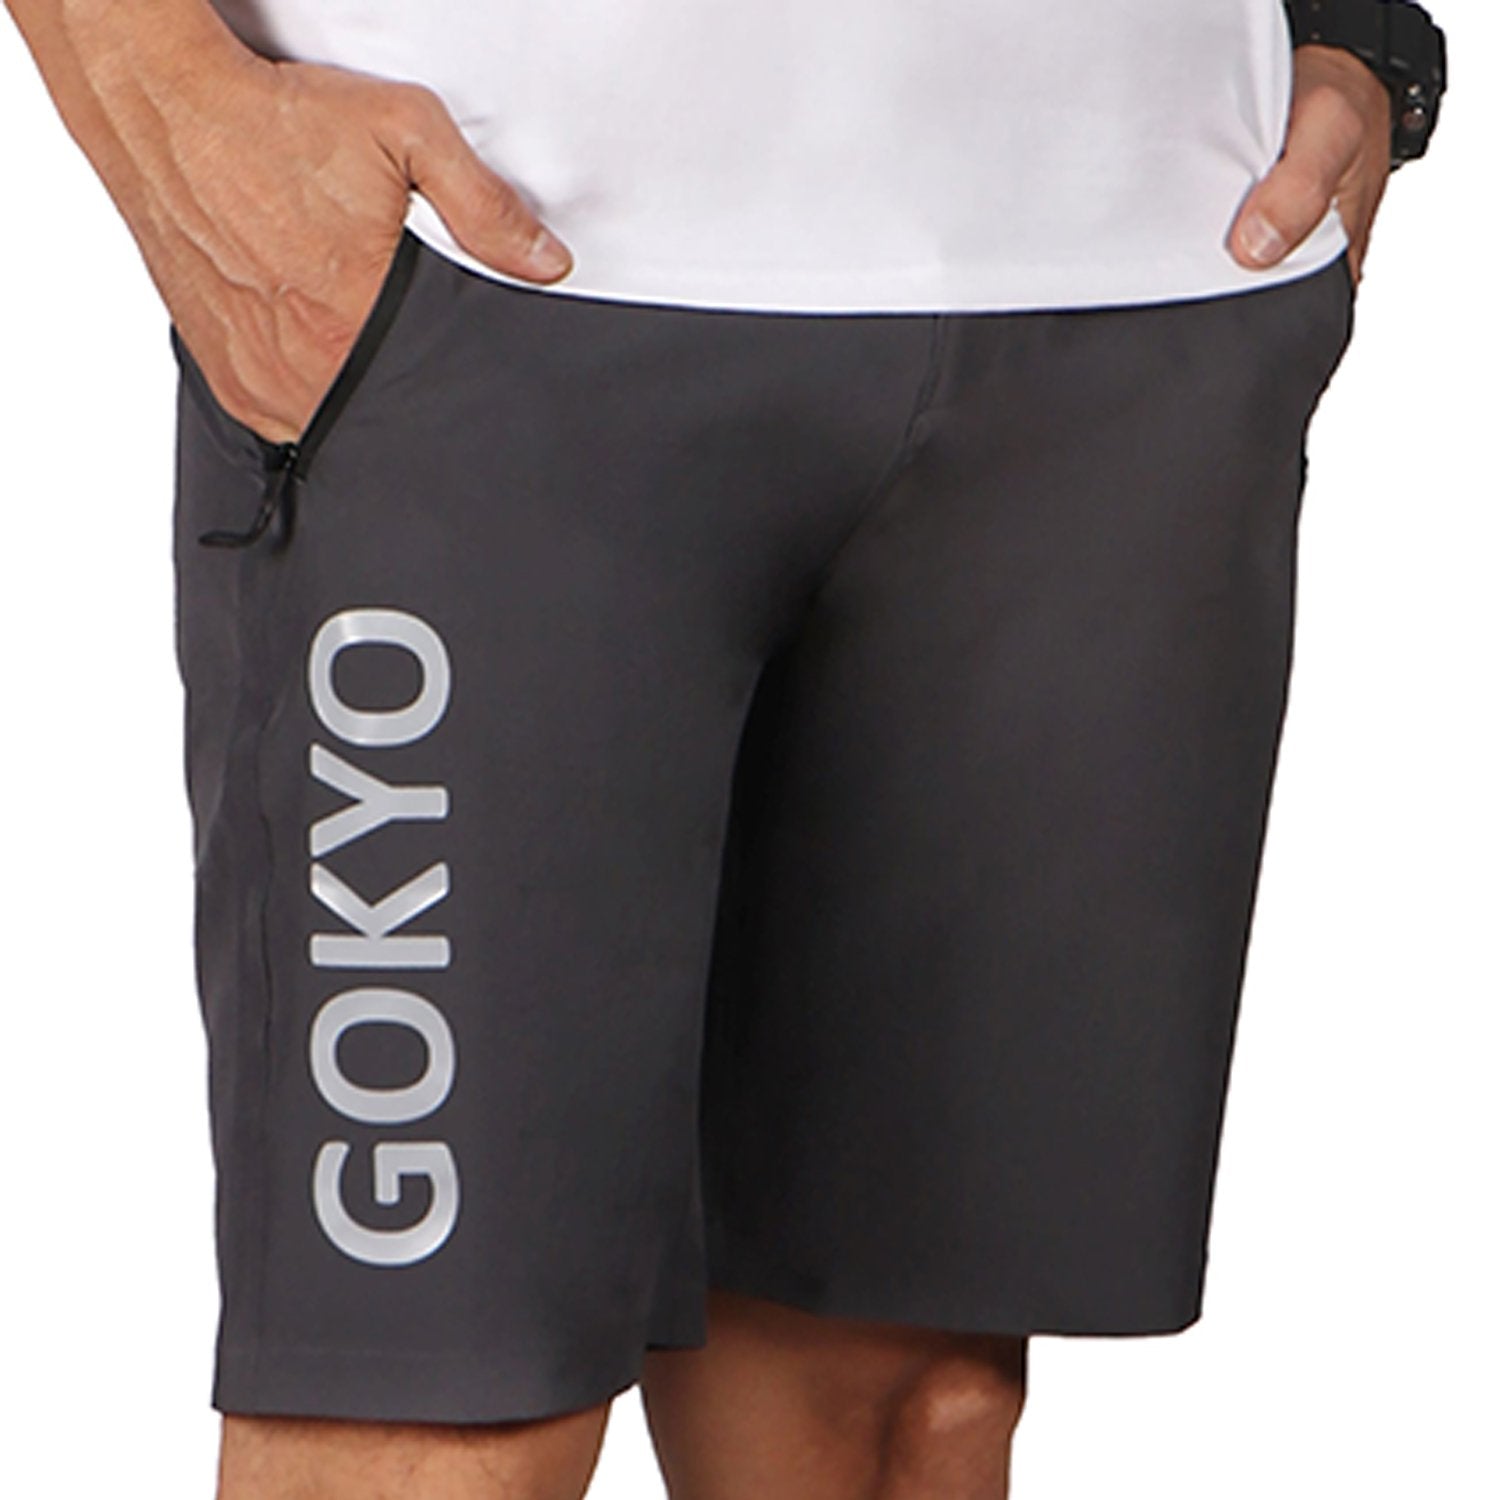 Buy Gokyo Kalimpong Trekking & Outdoor Shorts | Shorts at Gokyo Outdoor Clothing & Gear